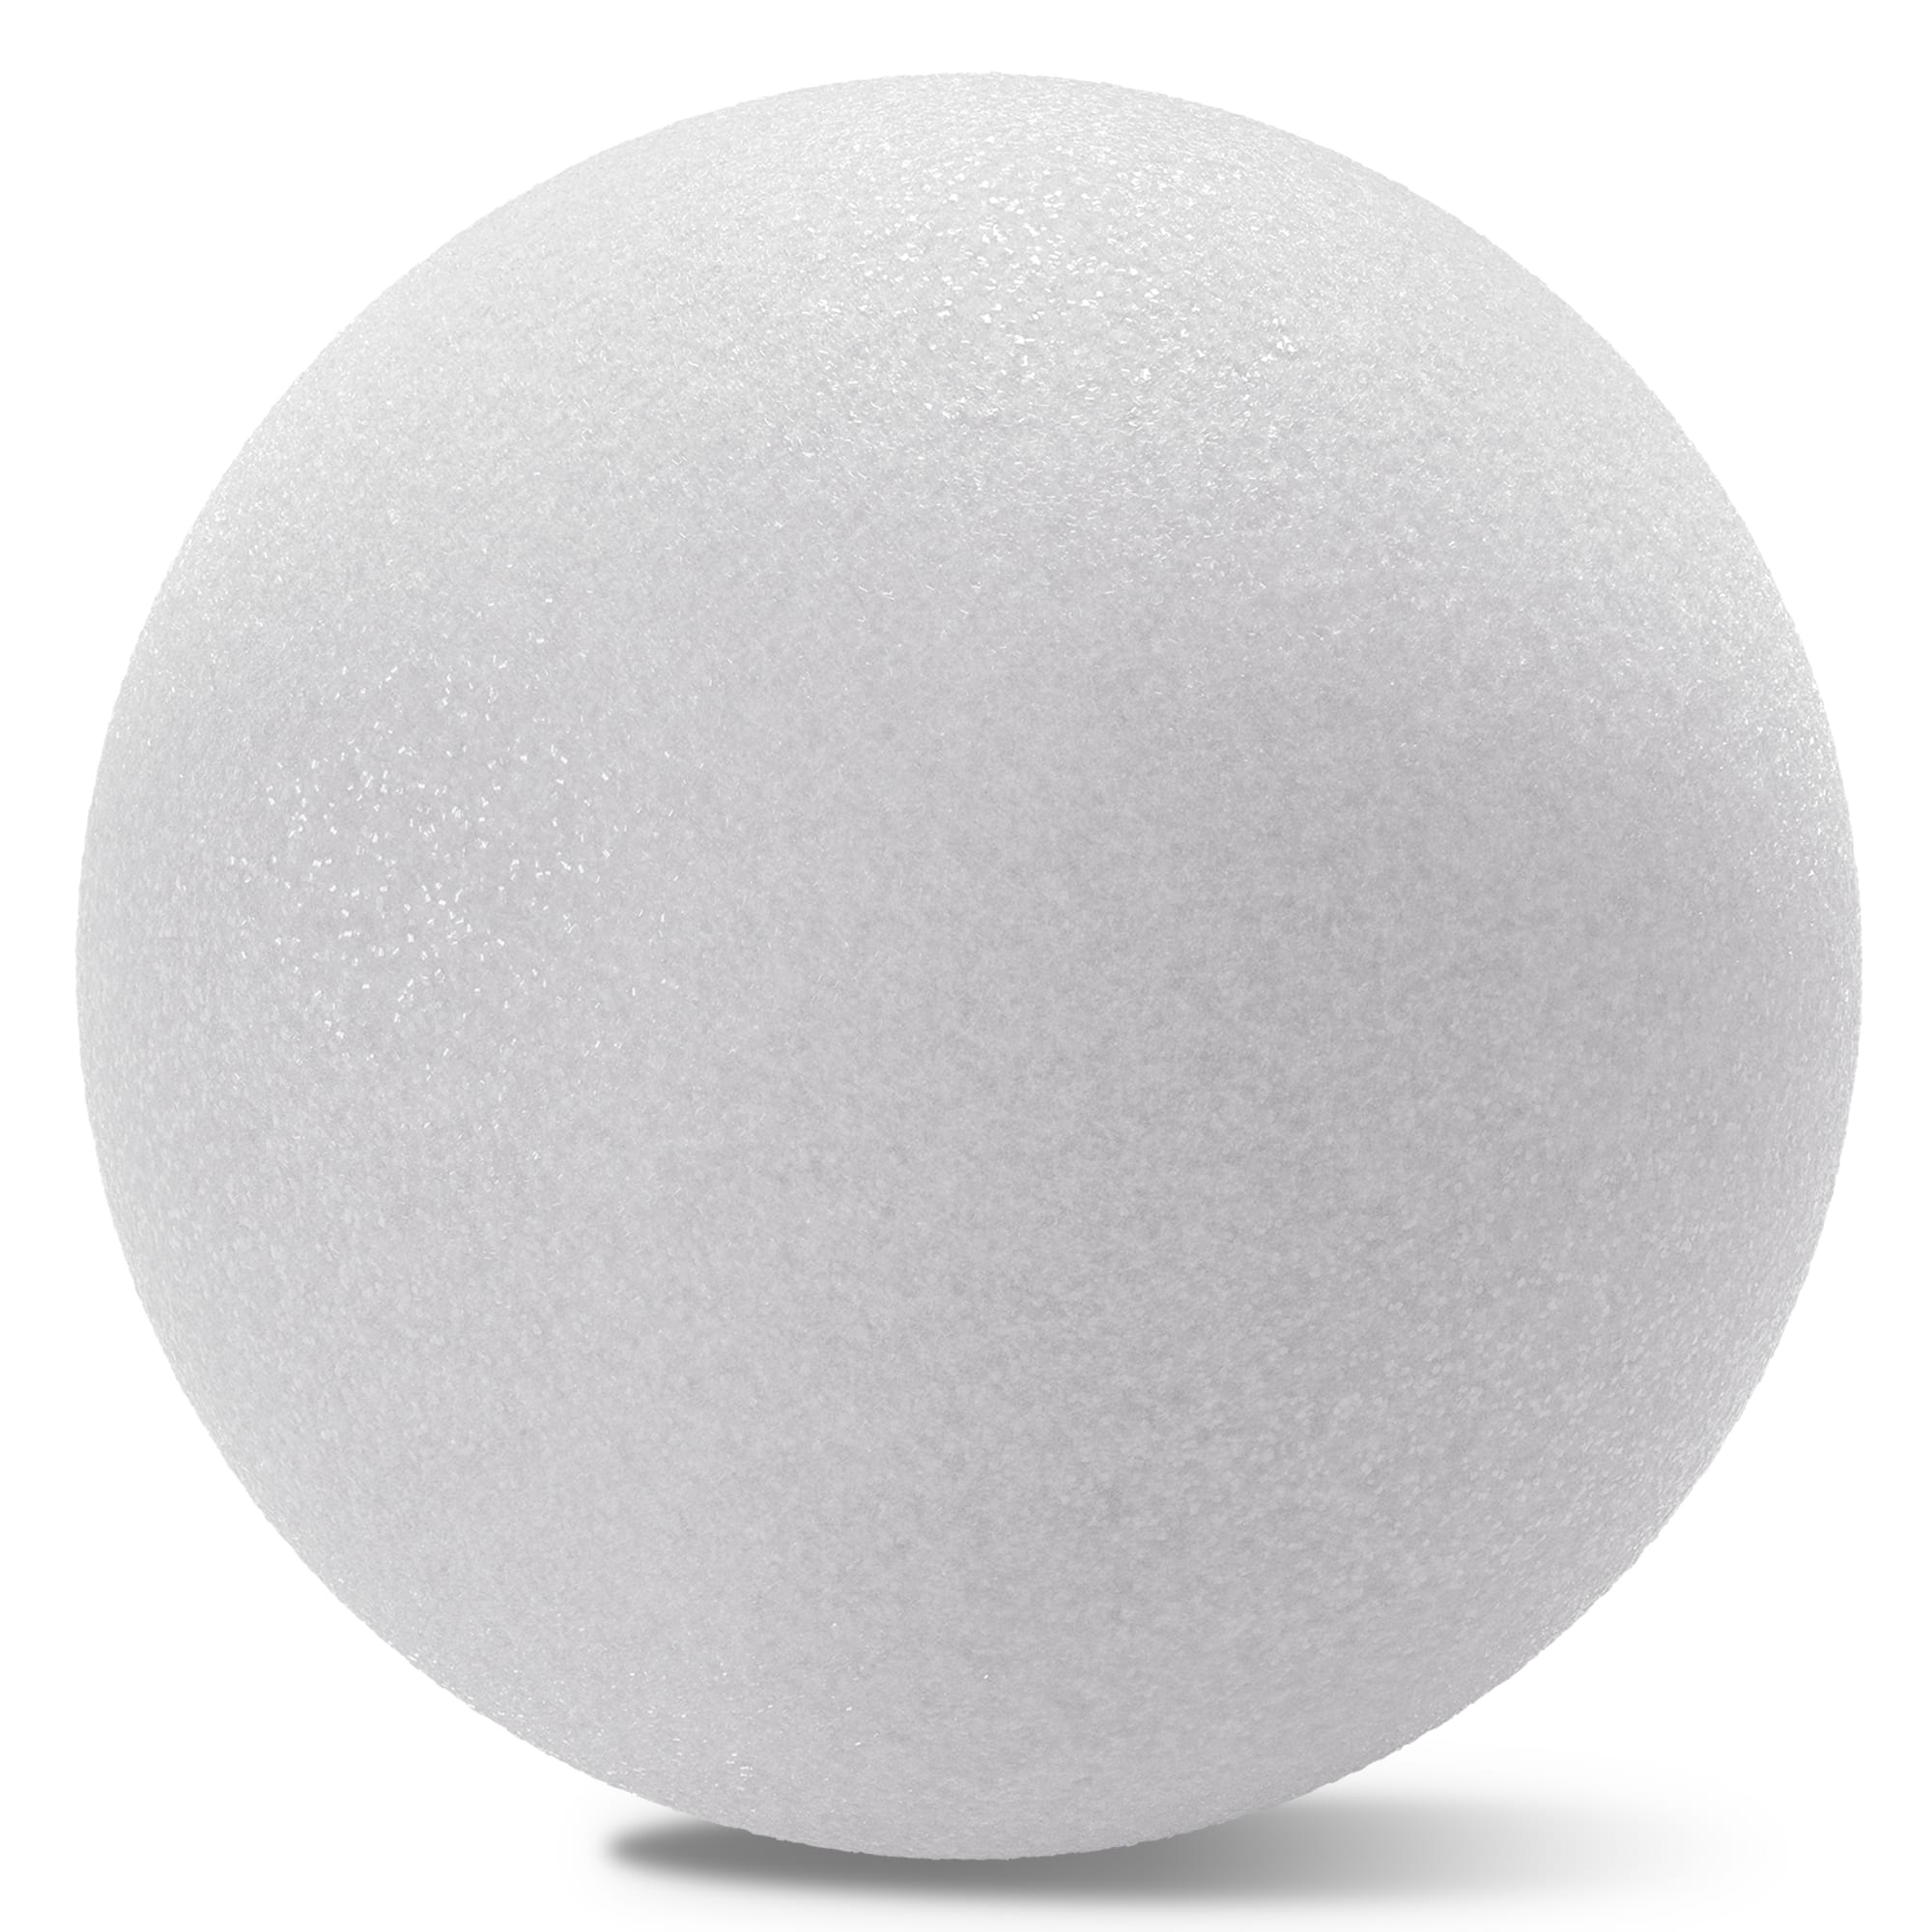 FloraCraft SmoothFoam Ball 5.8 Inch White 